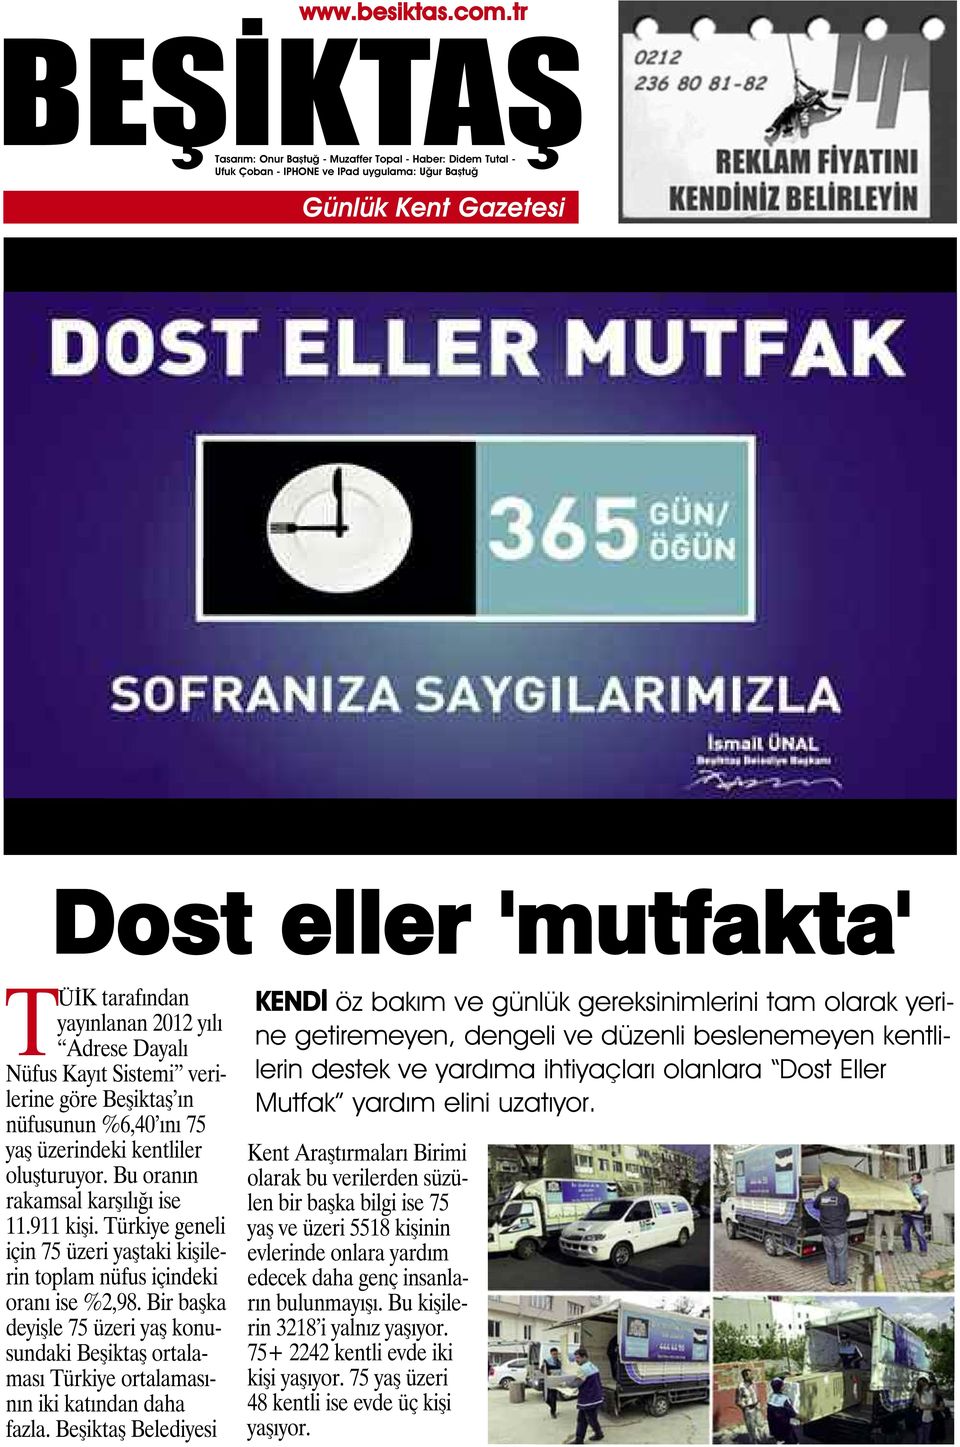 Bir başka deyişle 75 üzeri yaş konusundaki Beşiktaş ortalaması Türkiye ortalamasının iki katından daha fazla.